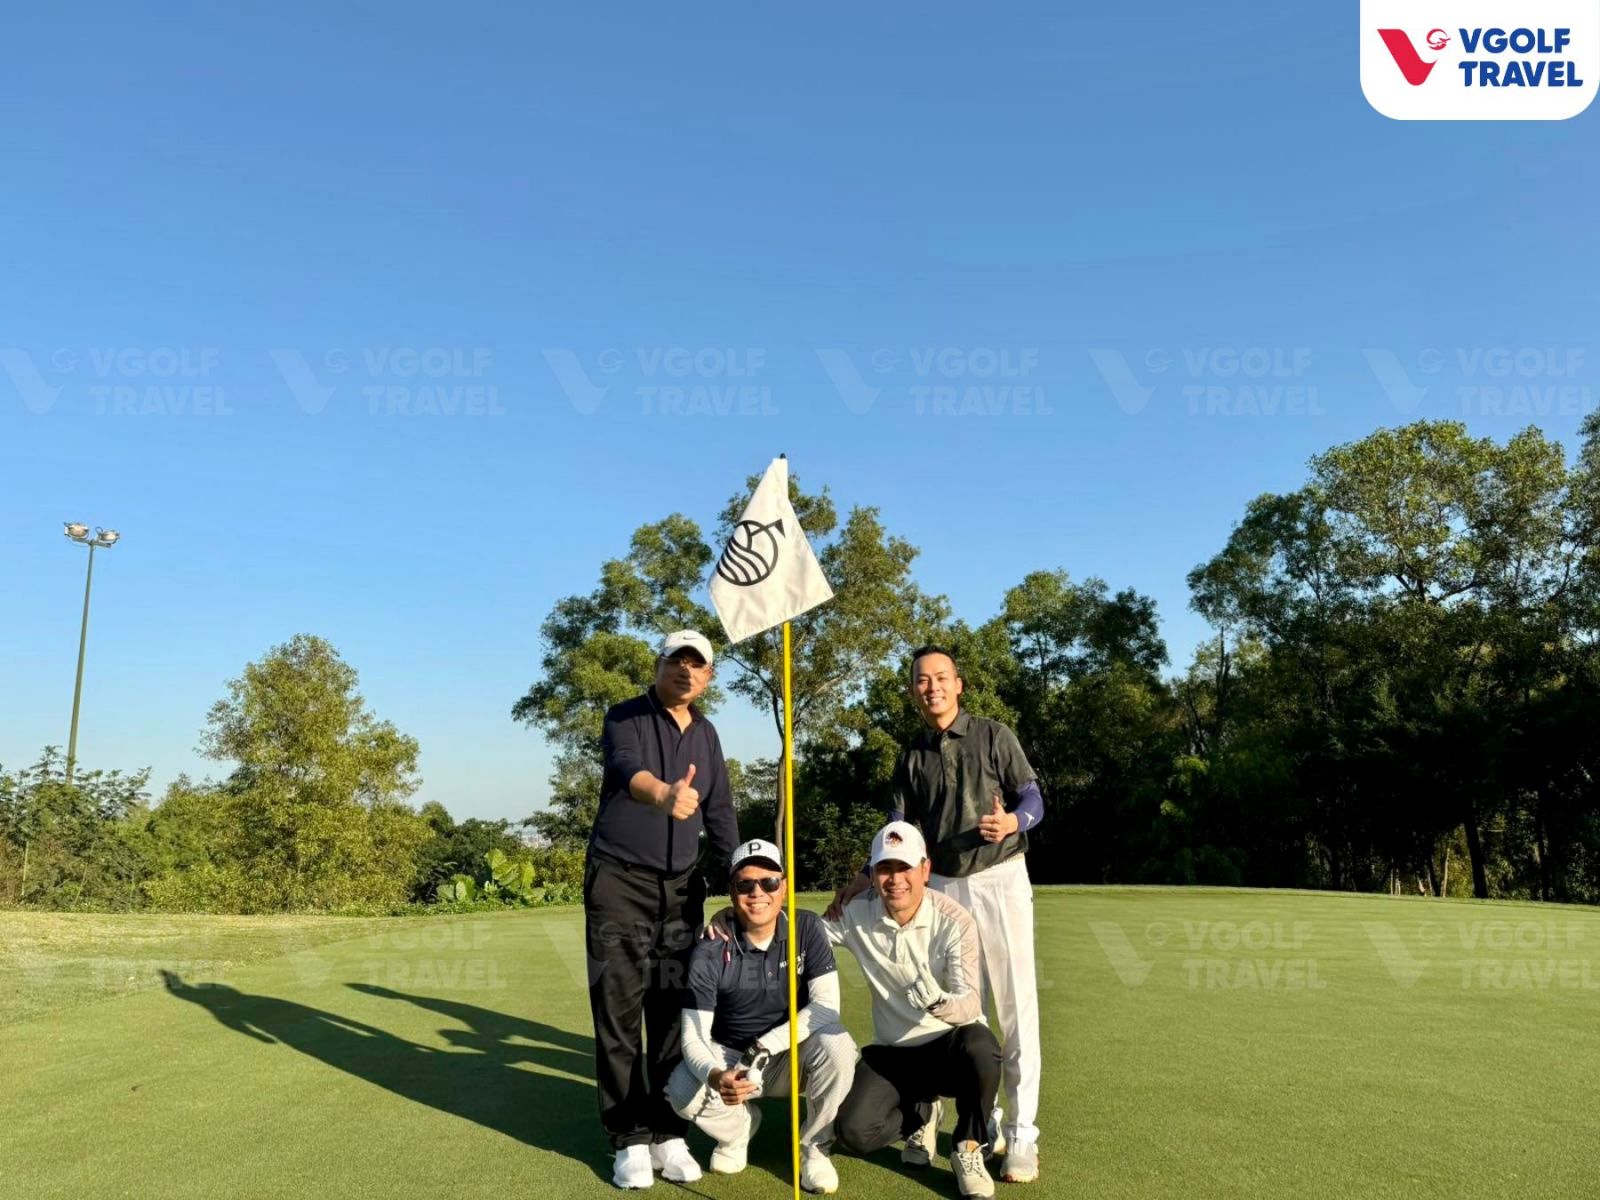  tour LIV Golf Hong Kong 2024 chơi golf tại Mission Hills